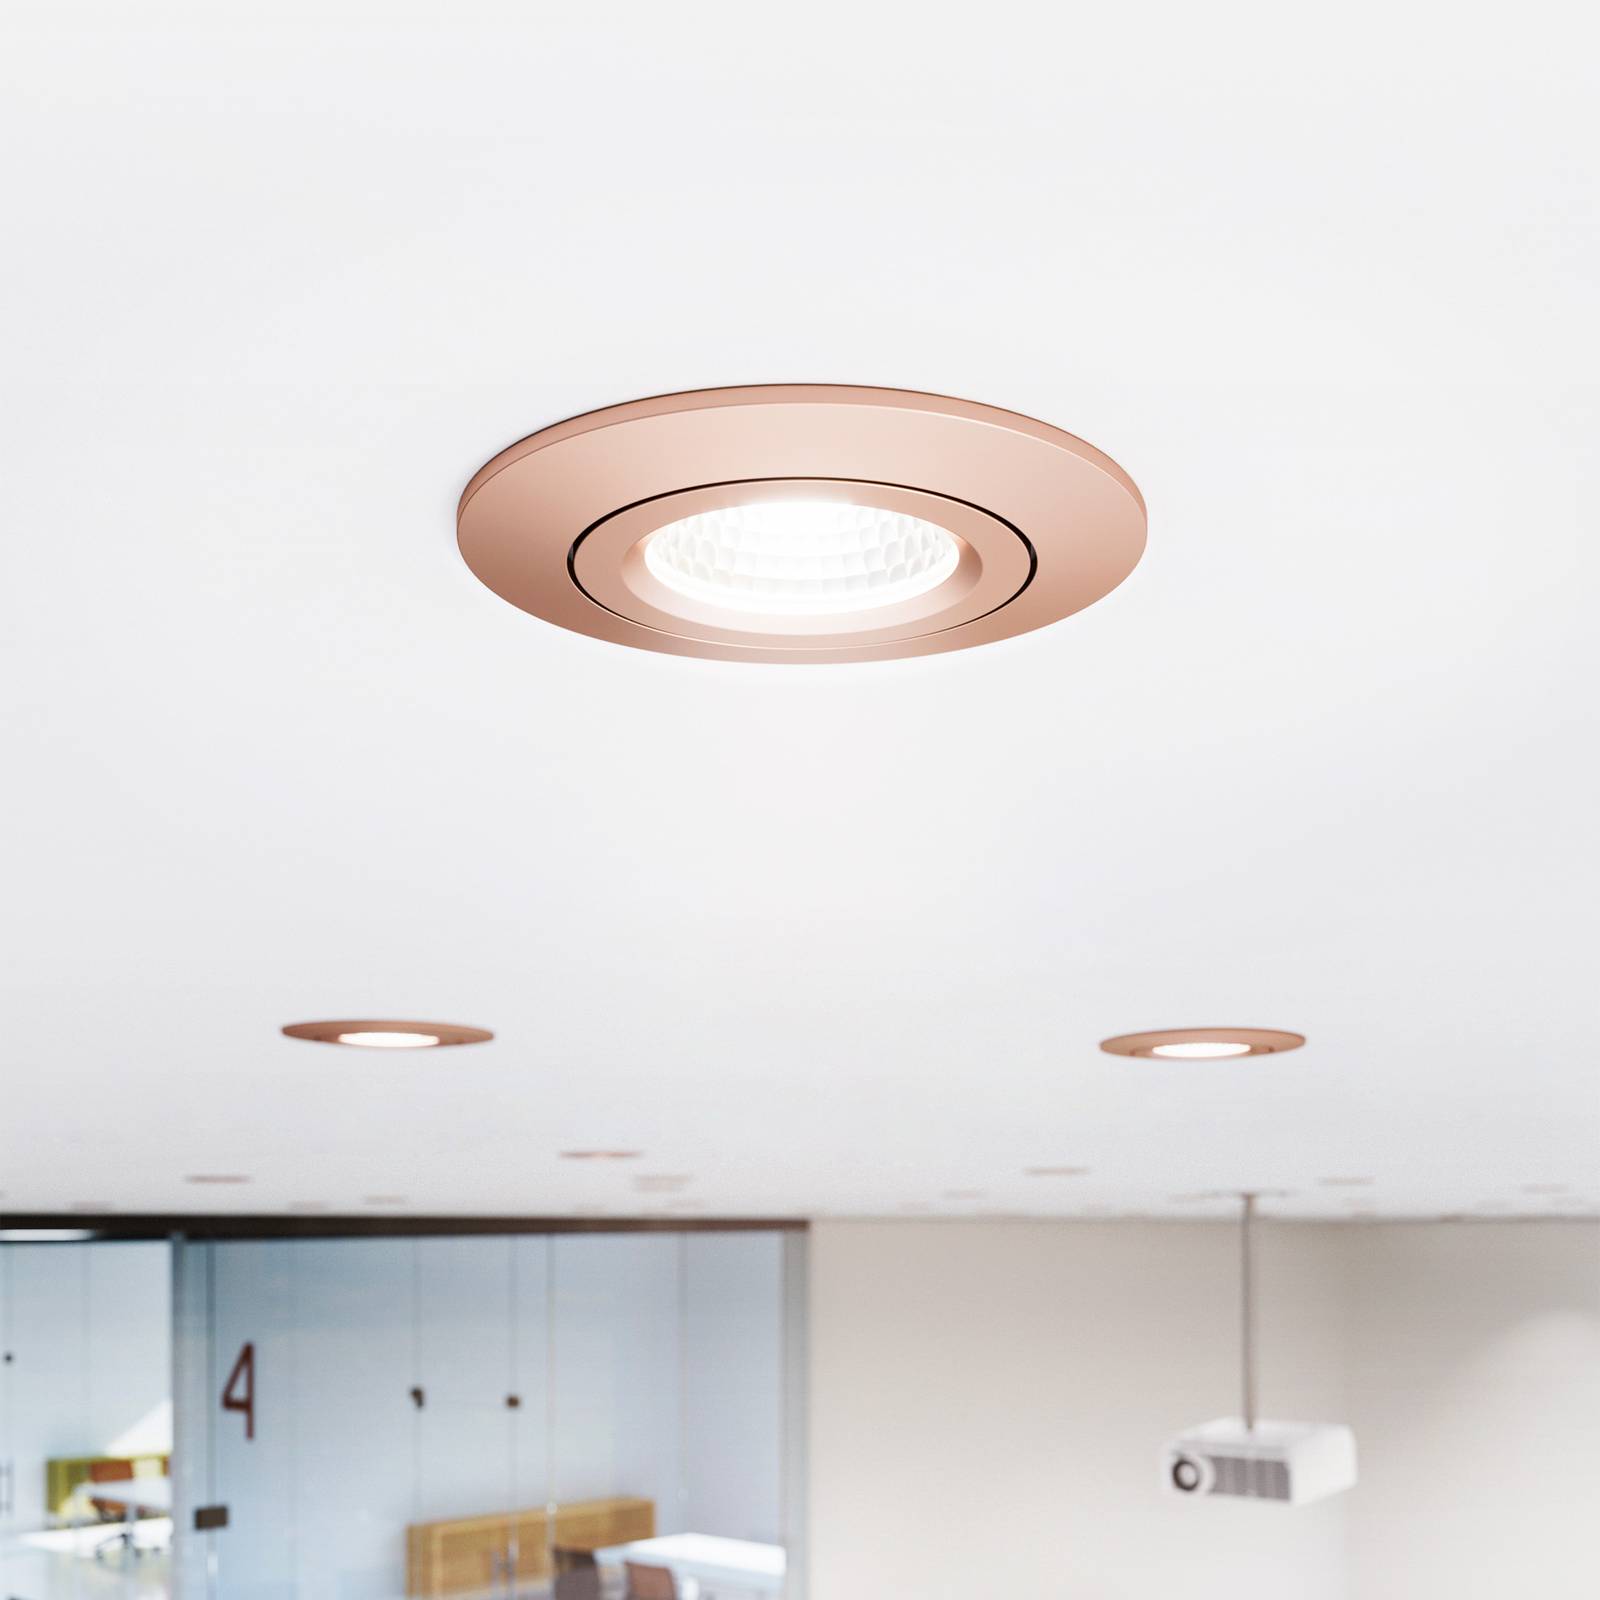 Sigor LED plafondinbouwspot Diled, Ø 8,5 cm, 6 W, Dim-To-Warm, rosé